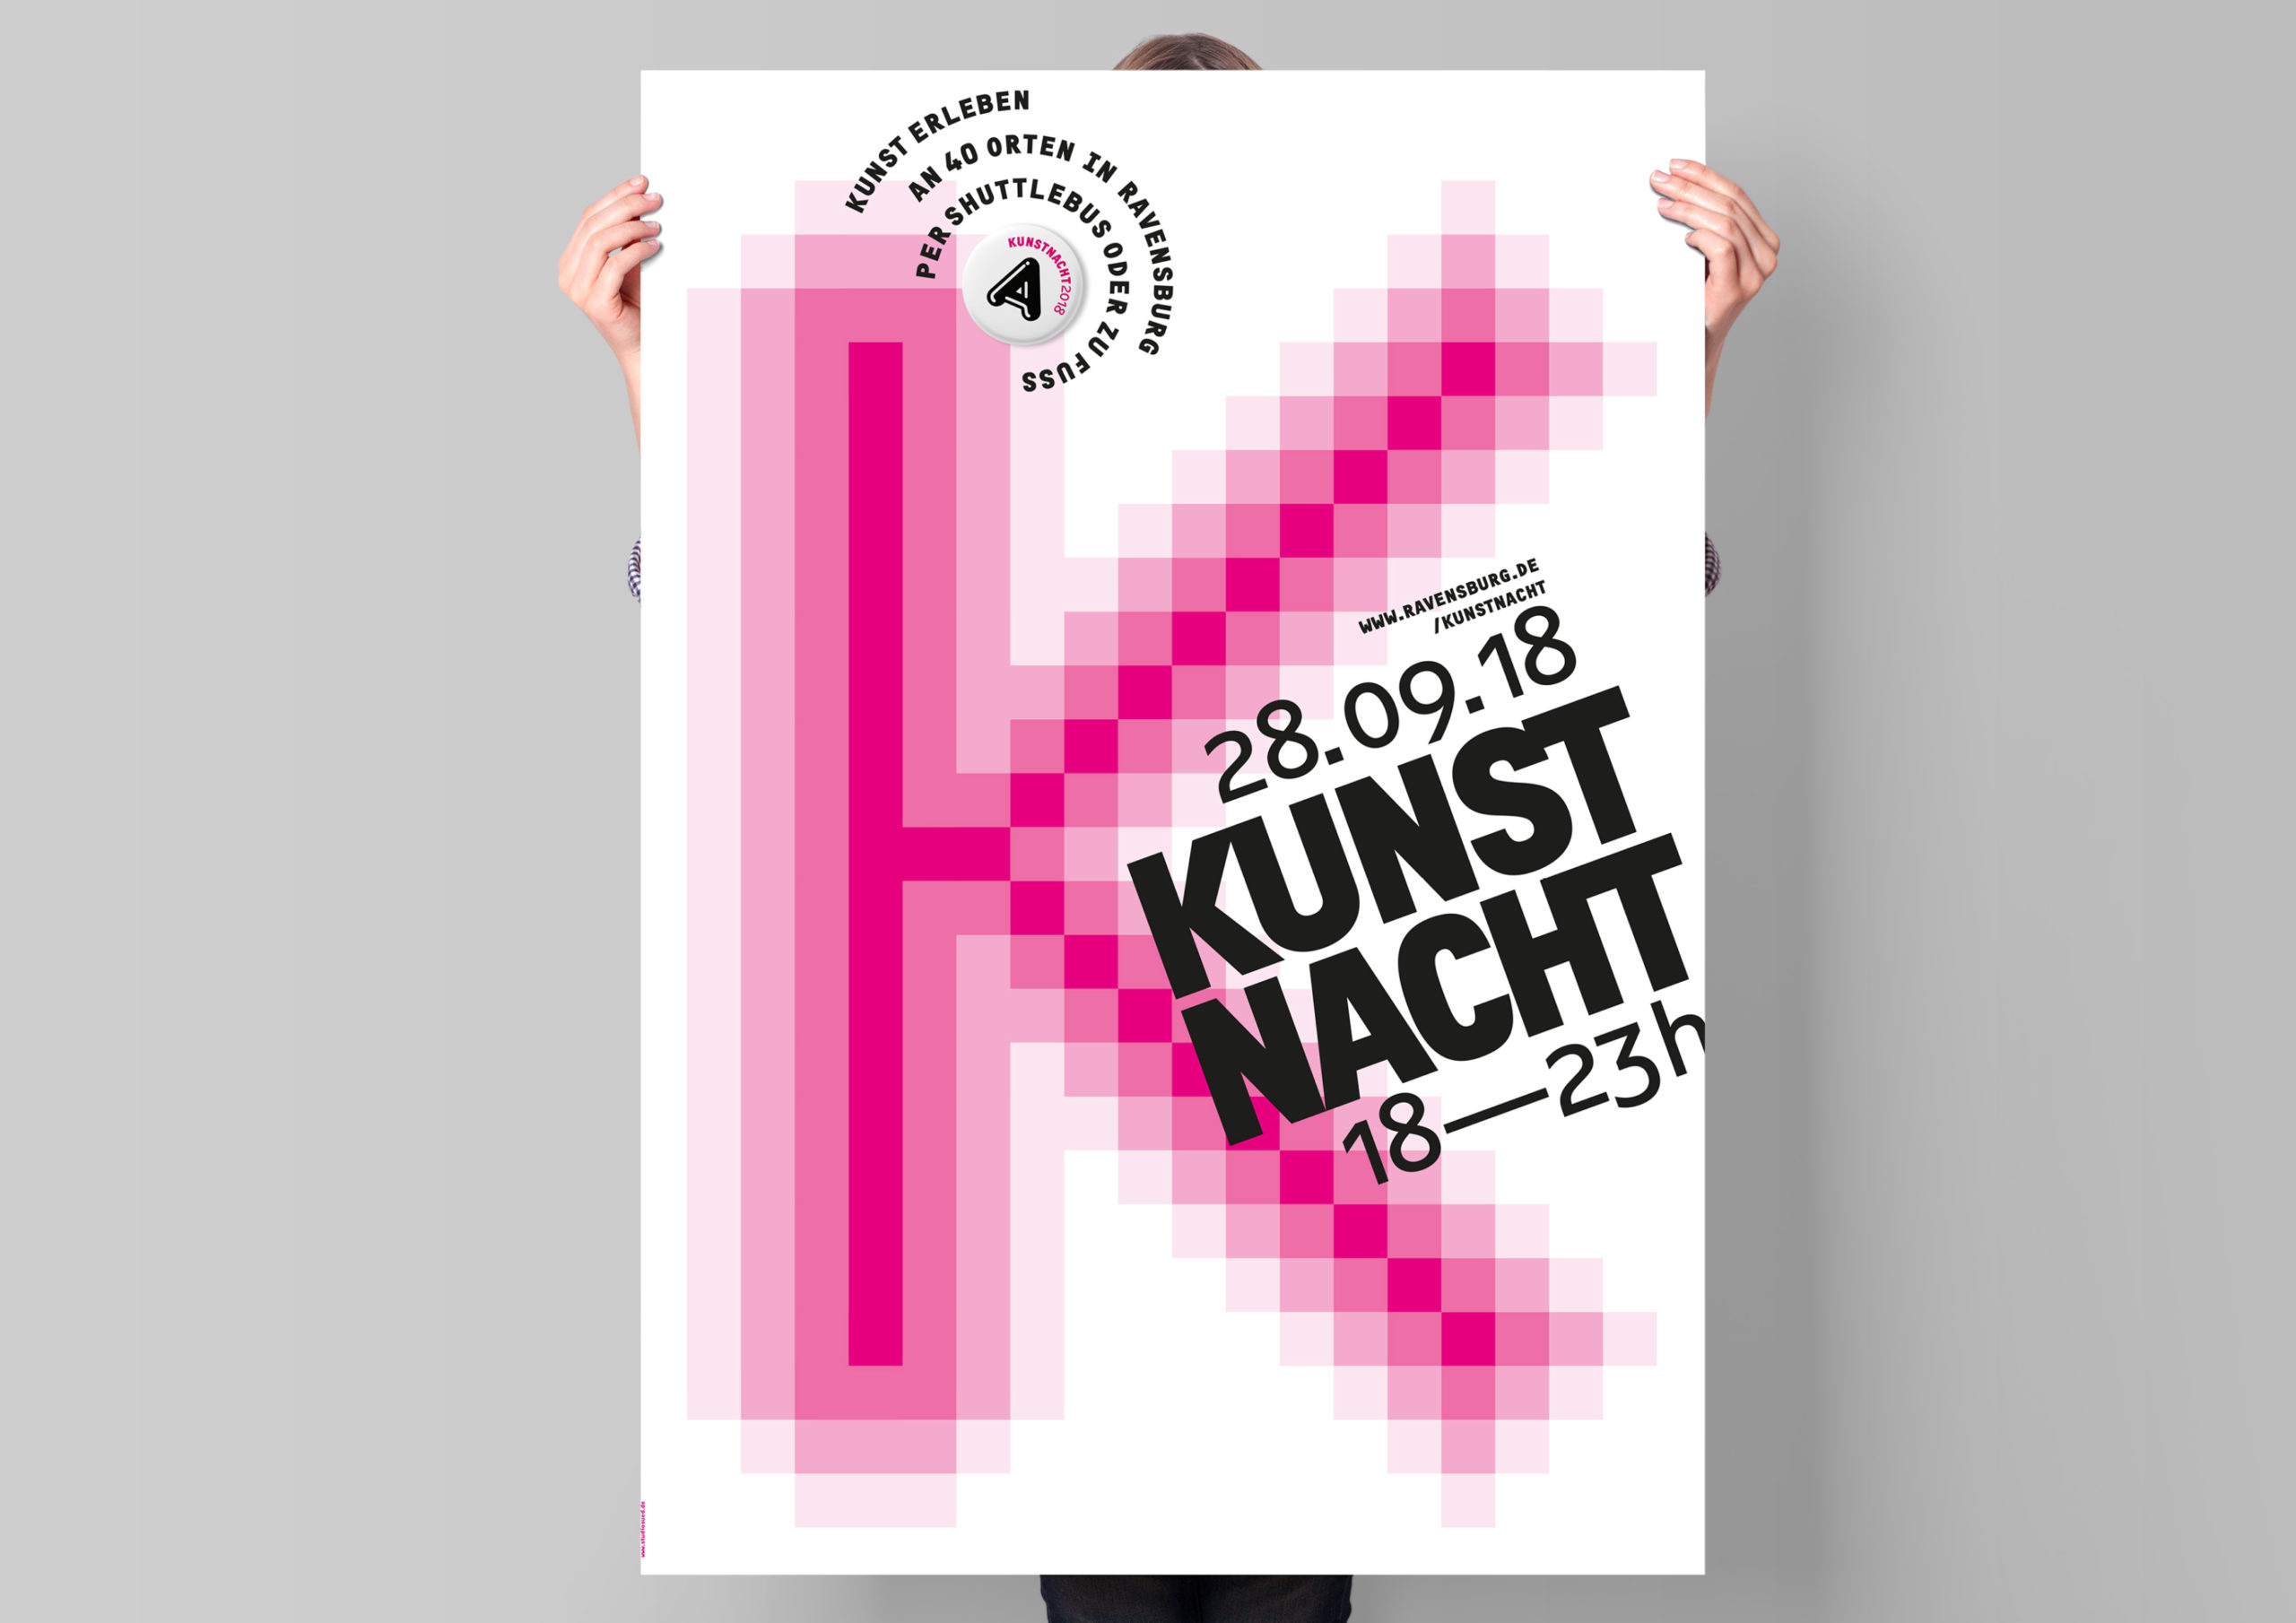 Studio SÜD Kunstnacht 2018